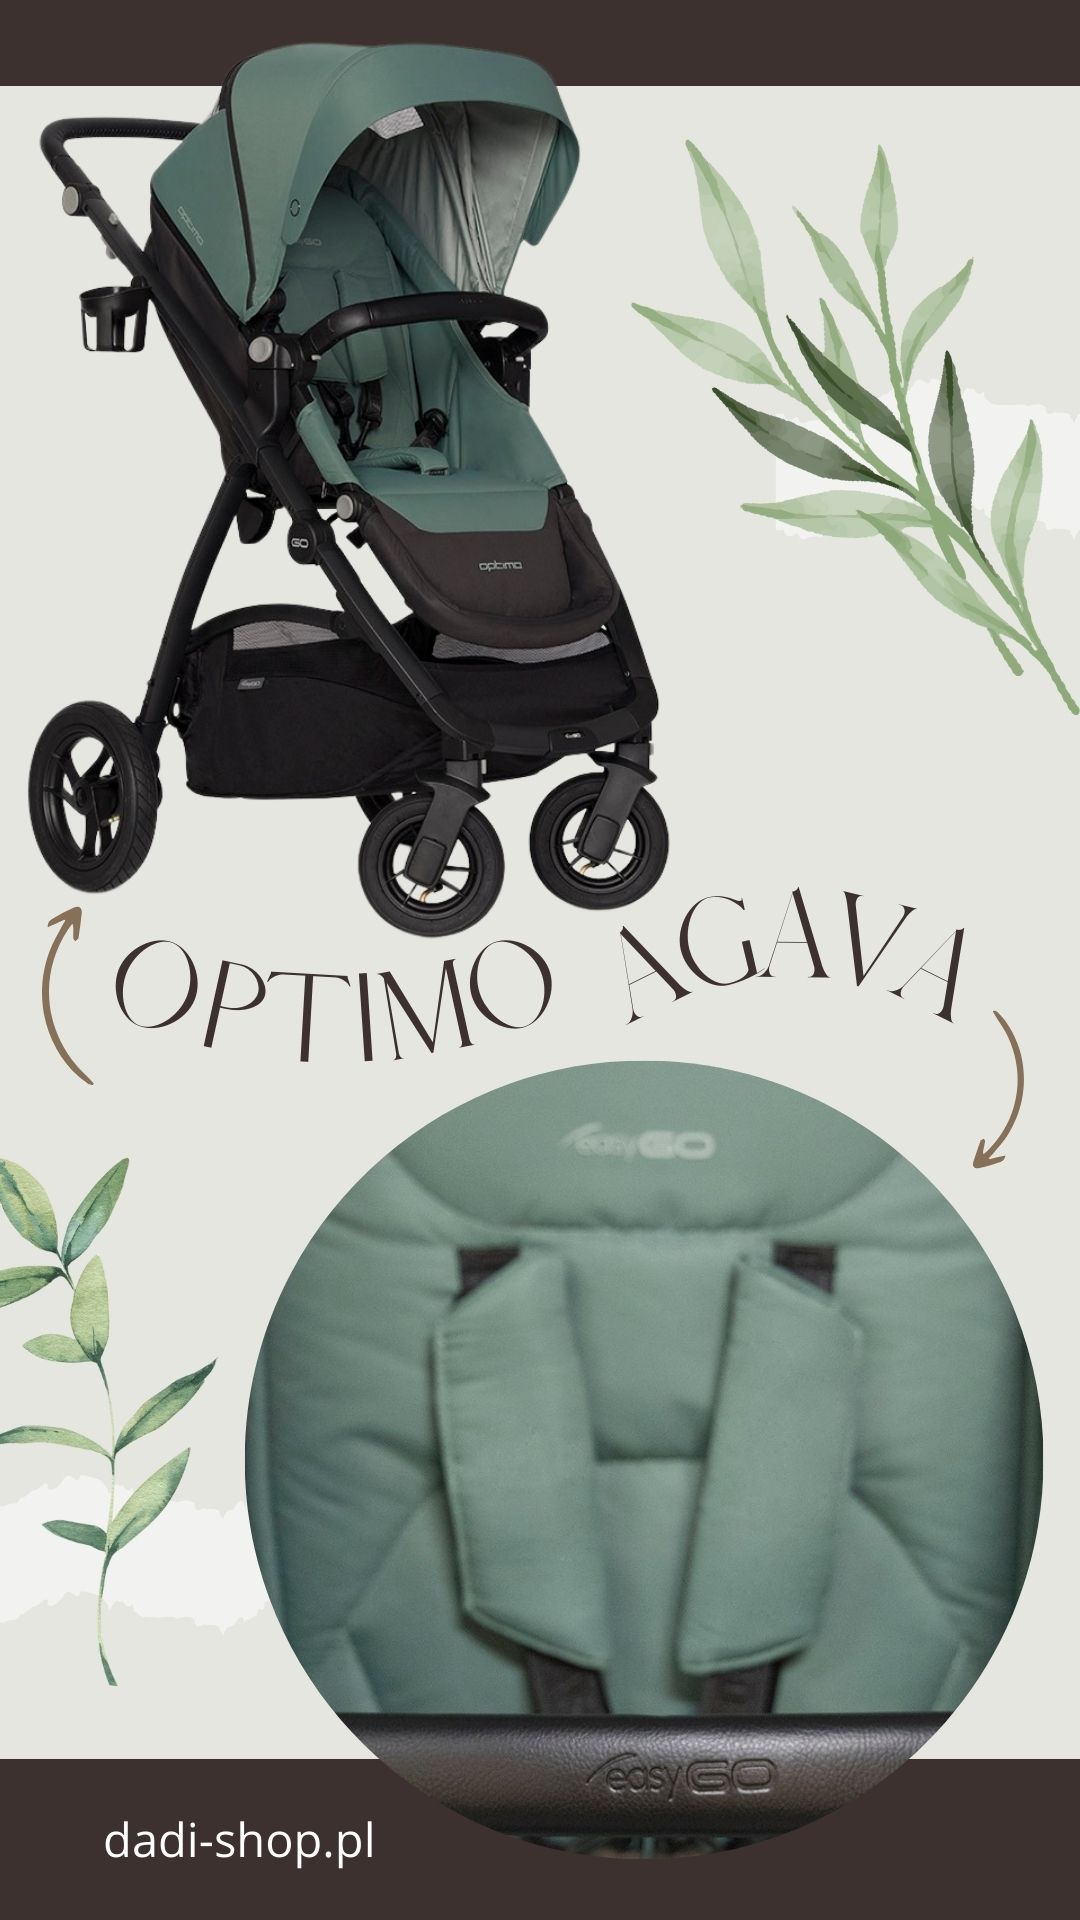 EasyGO Optimo Agava Stroller wózek spacerowy zielony dadi-shop wyprzedaż